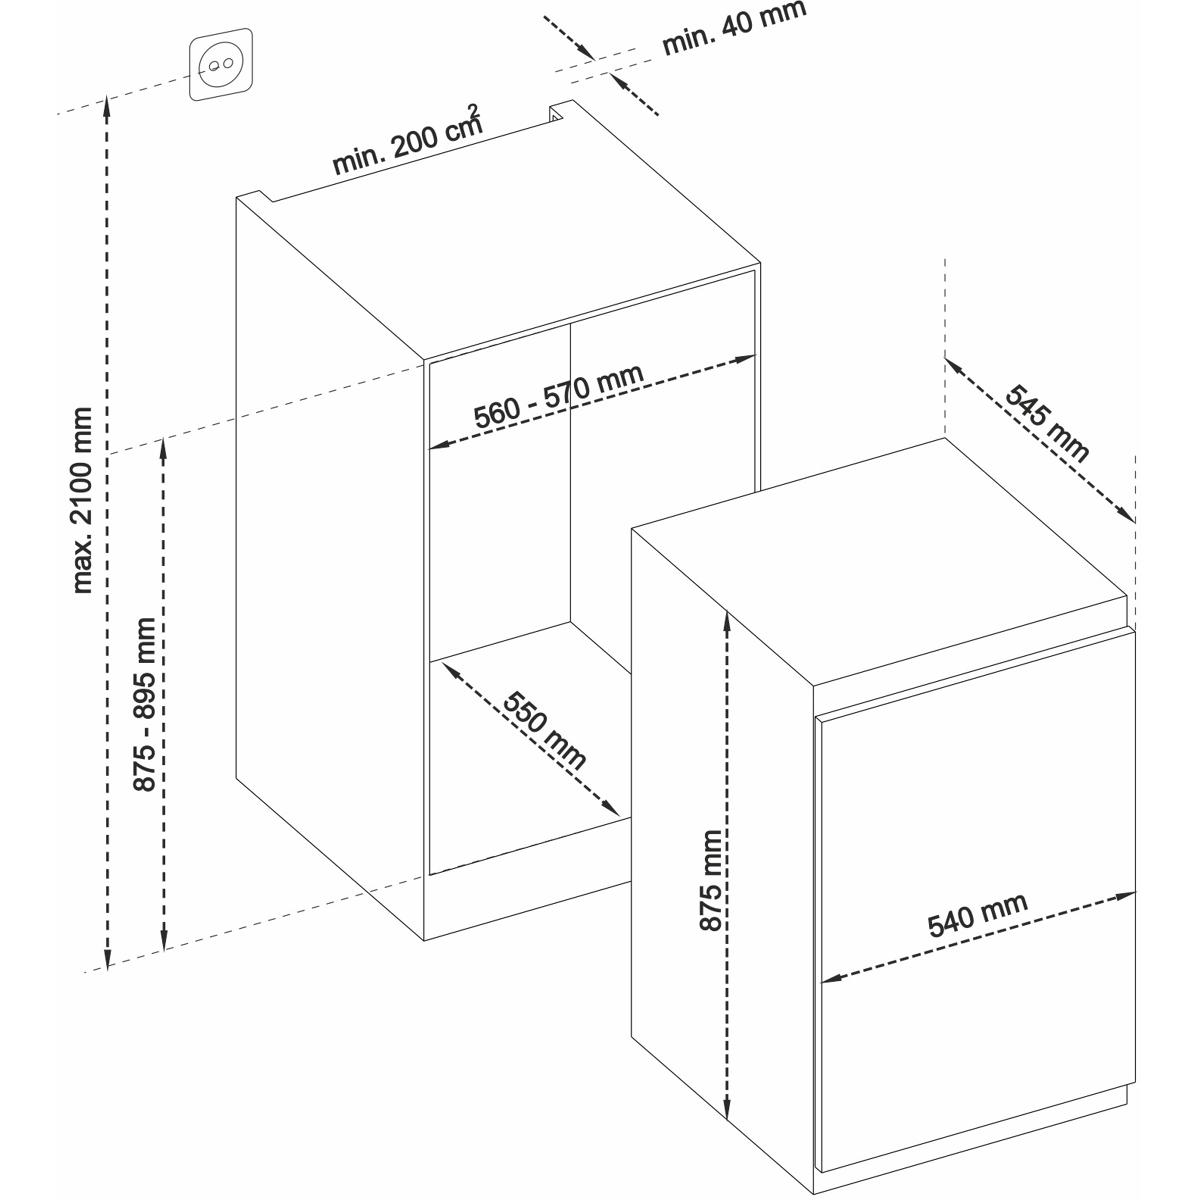 SJ-LE134M0X Einbau-Kühlschrank 88cm ohne Gefrierfach (Festtür